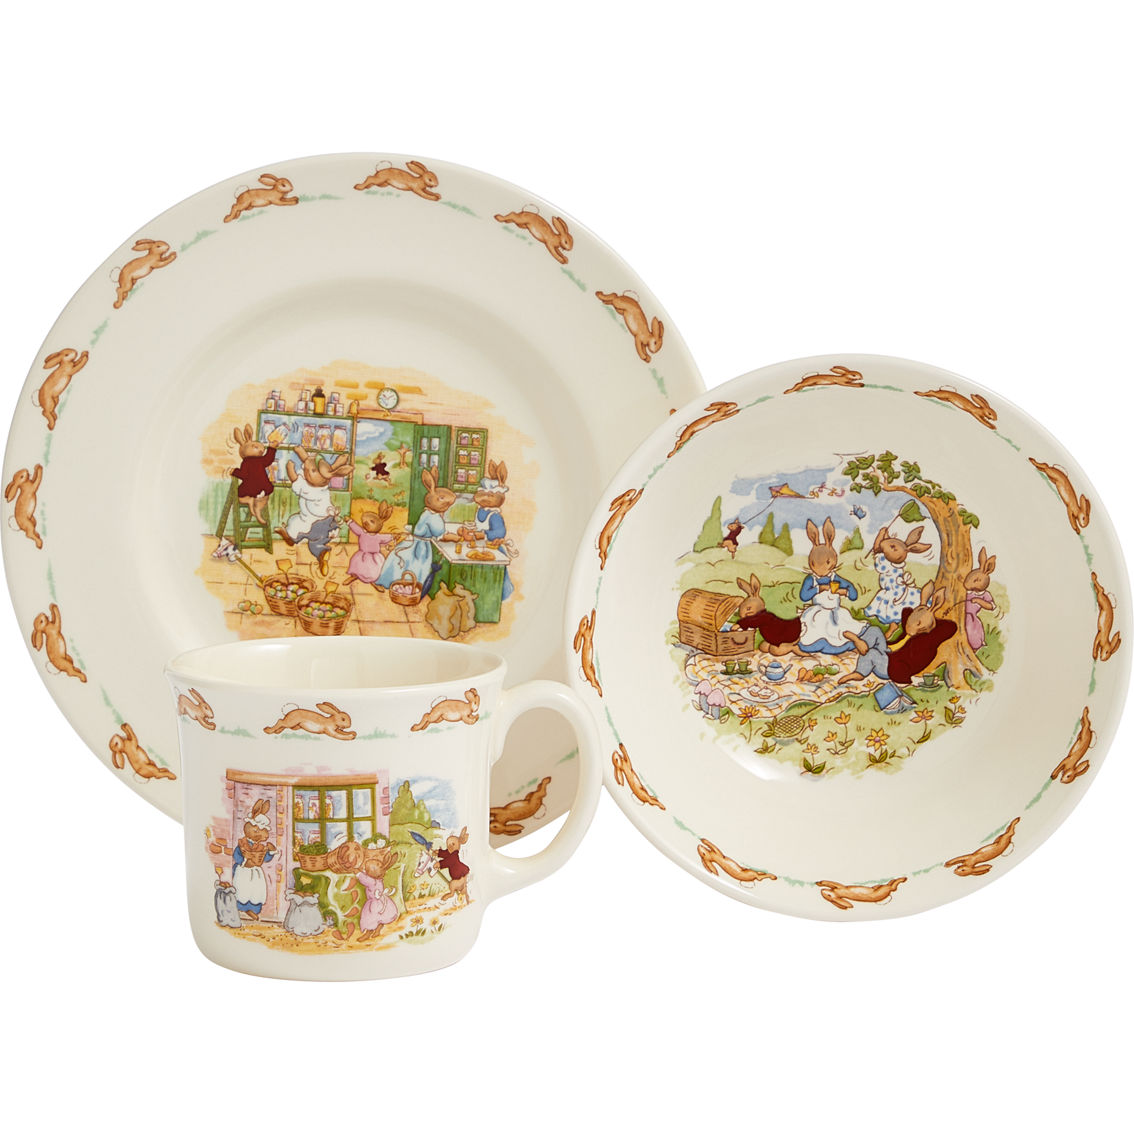 Royal Doulton Bunnykins Children's Bowl, Plate and Mug 3 pc. Set - Image 2 of 2